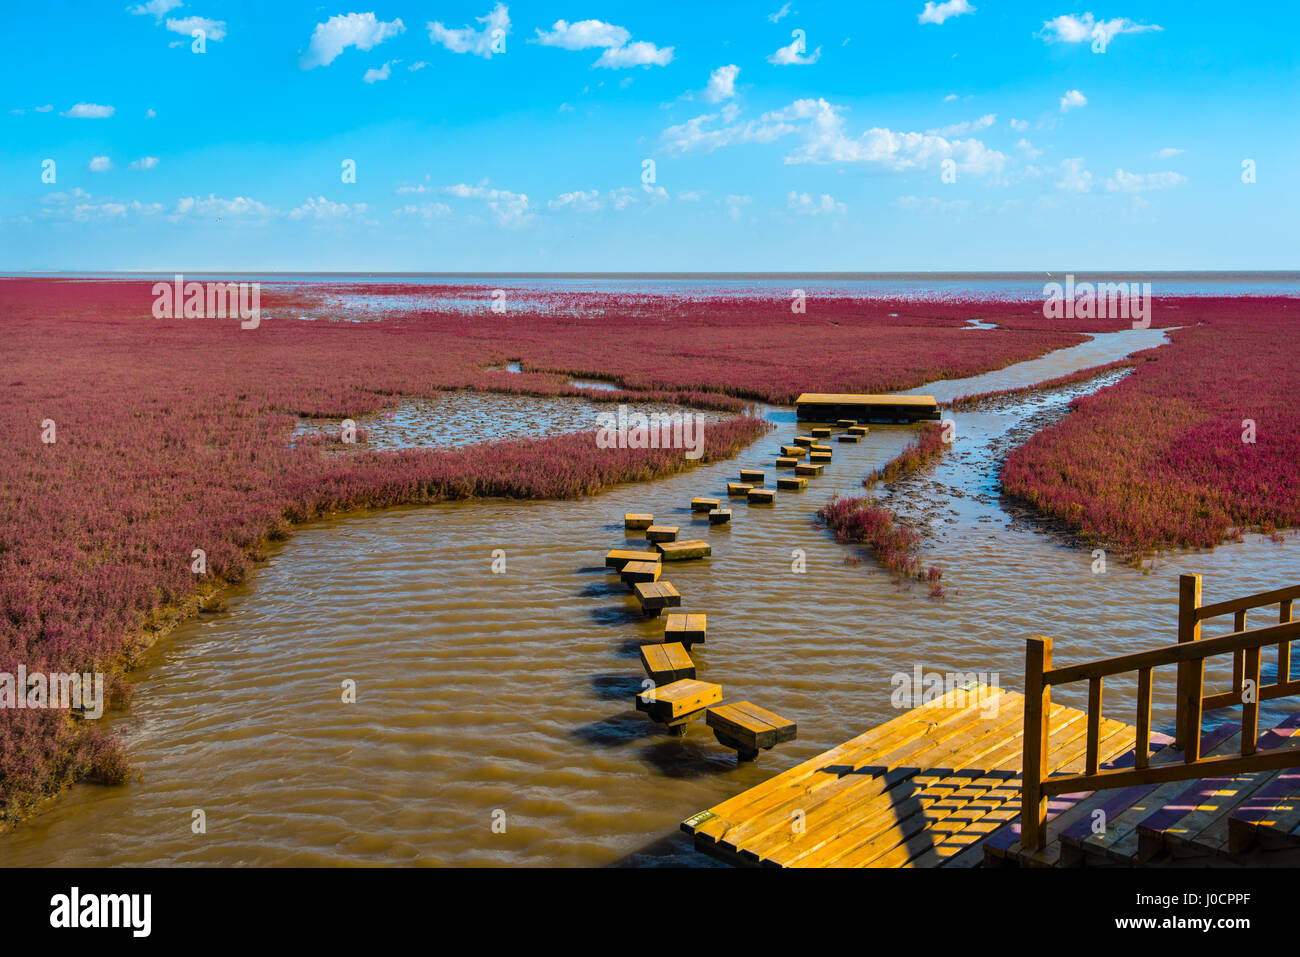 La plage rouge, situé dans le Delta du Liaohe à 30km au sud ouest de Troisdorf, Liaoning, Chine. La plage est une zone marécageuse d'importance énorme pour birdlife Banque D'Images